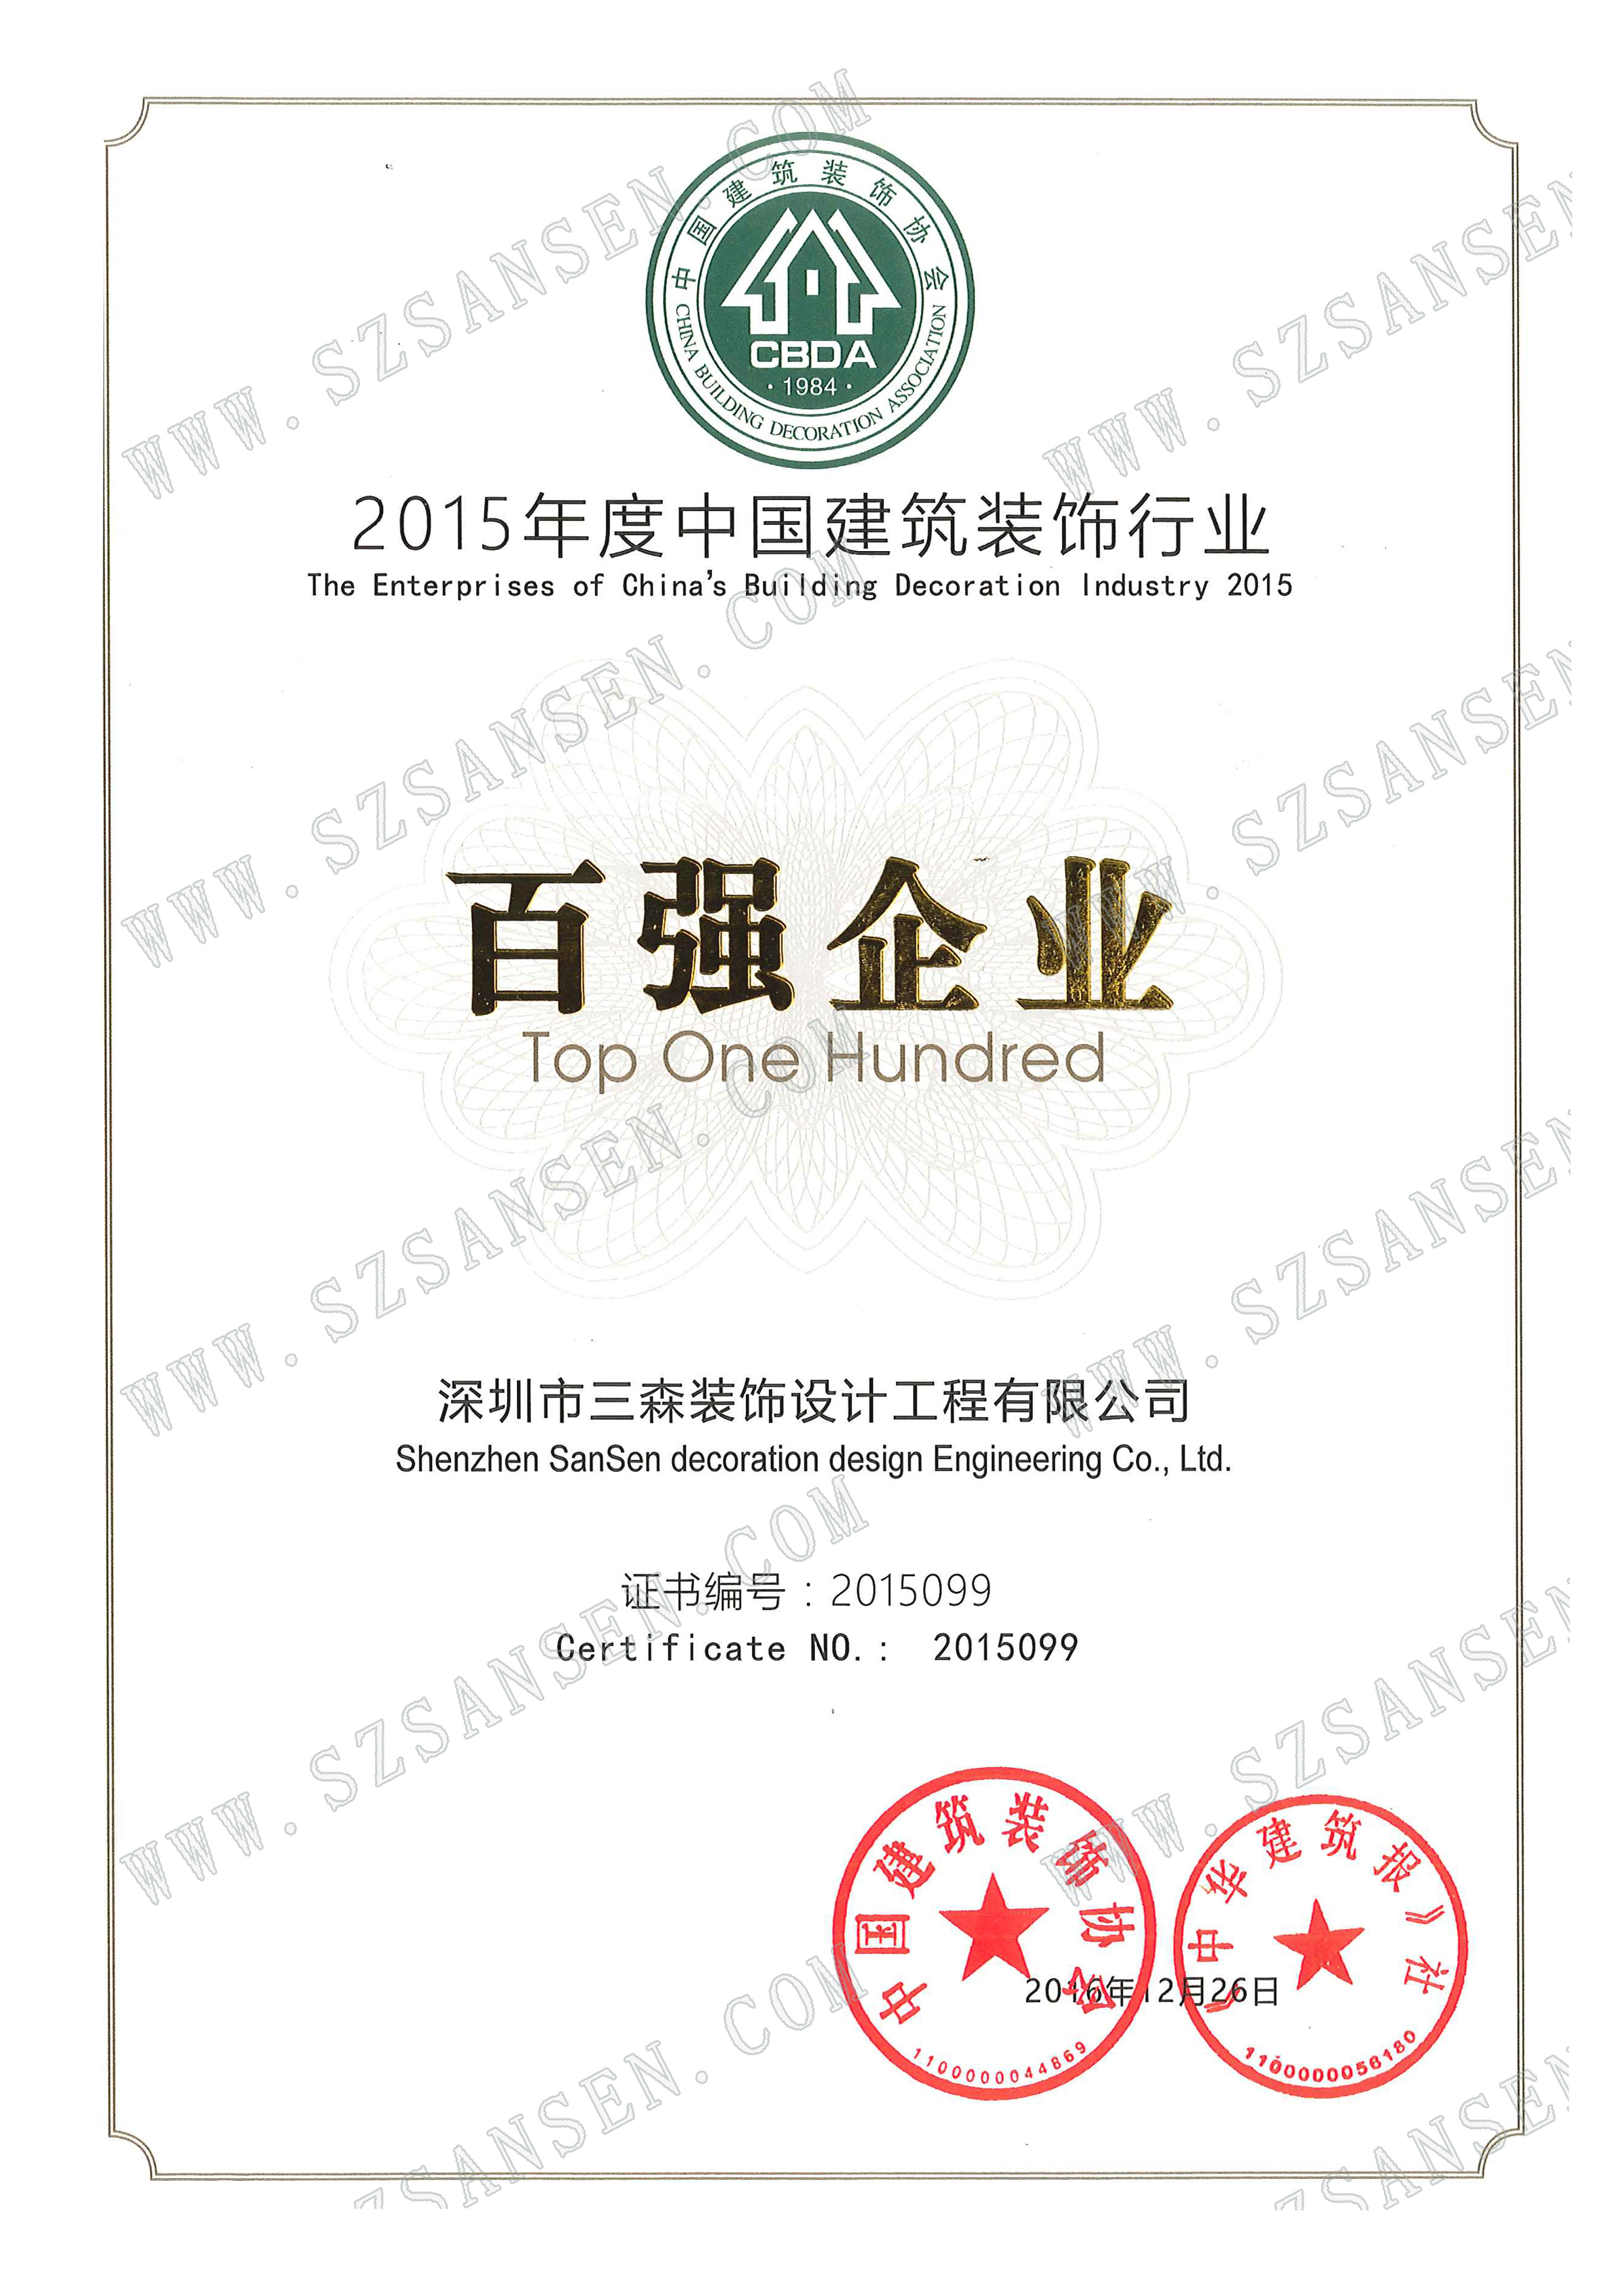 0. 2015年度中国建筑装饰行业百强企业证书.jpg